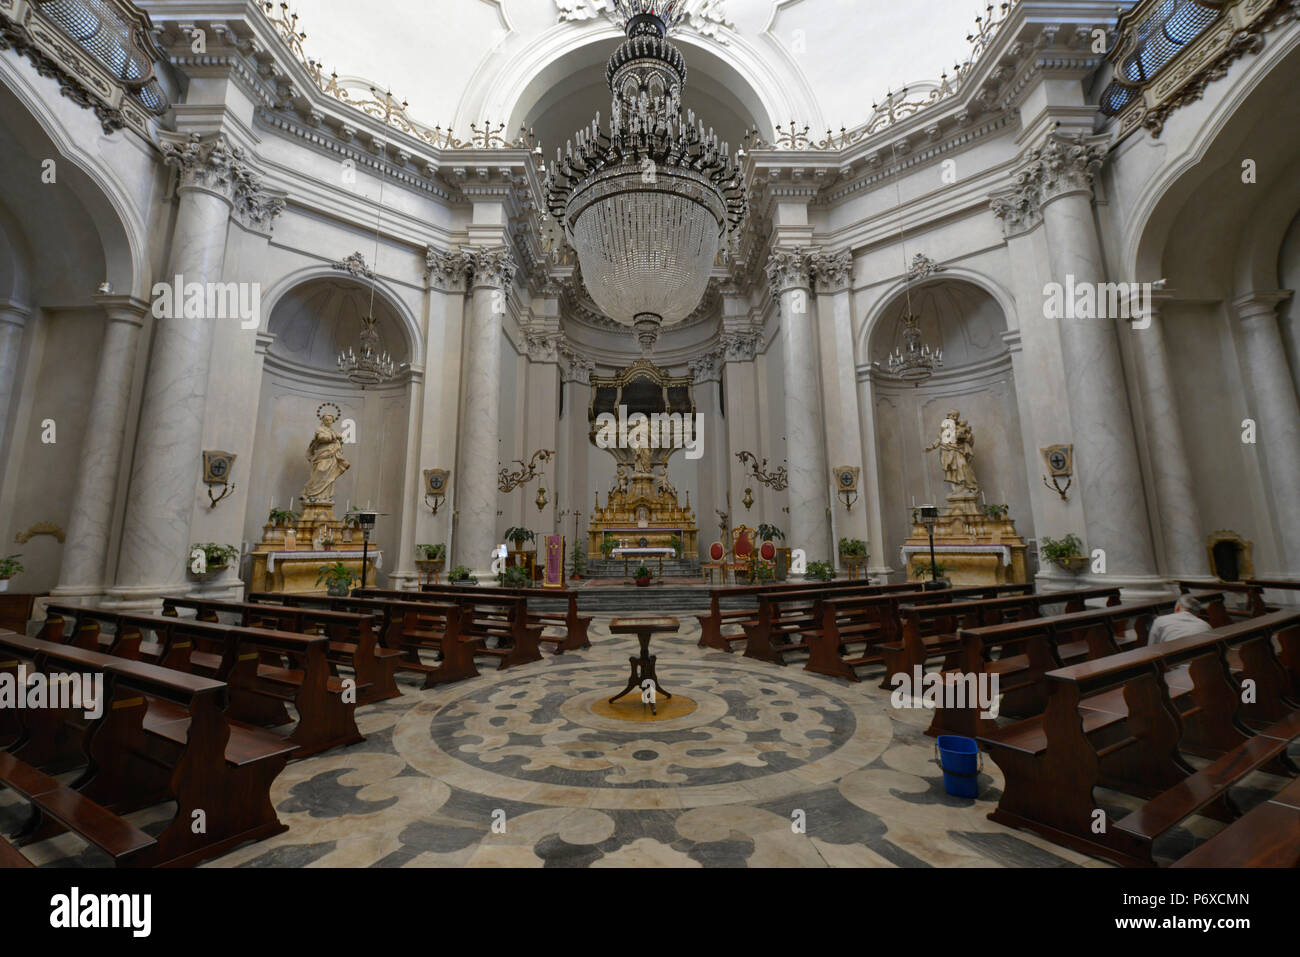 Innenraum, Chiesa della Badia di Sant'Agata, Via Vittorio Emanuele II, Catania, Sizilien, Italien Foto de stock